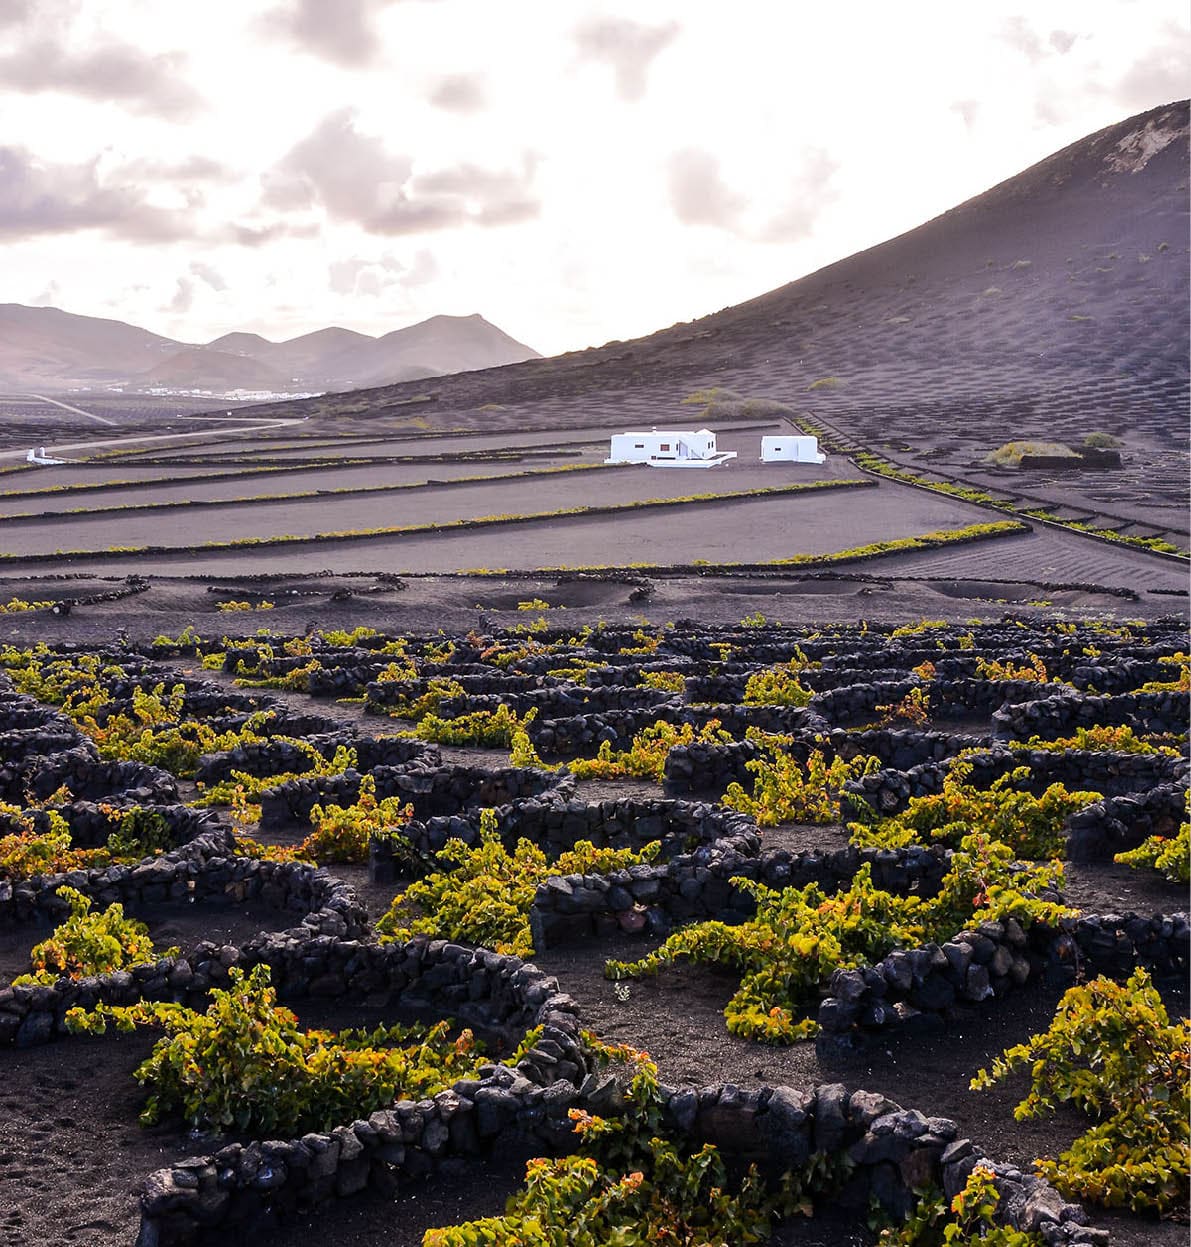 Vineyards in La Geria Lanzarote canary islands Spain